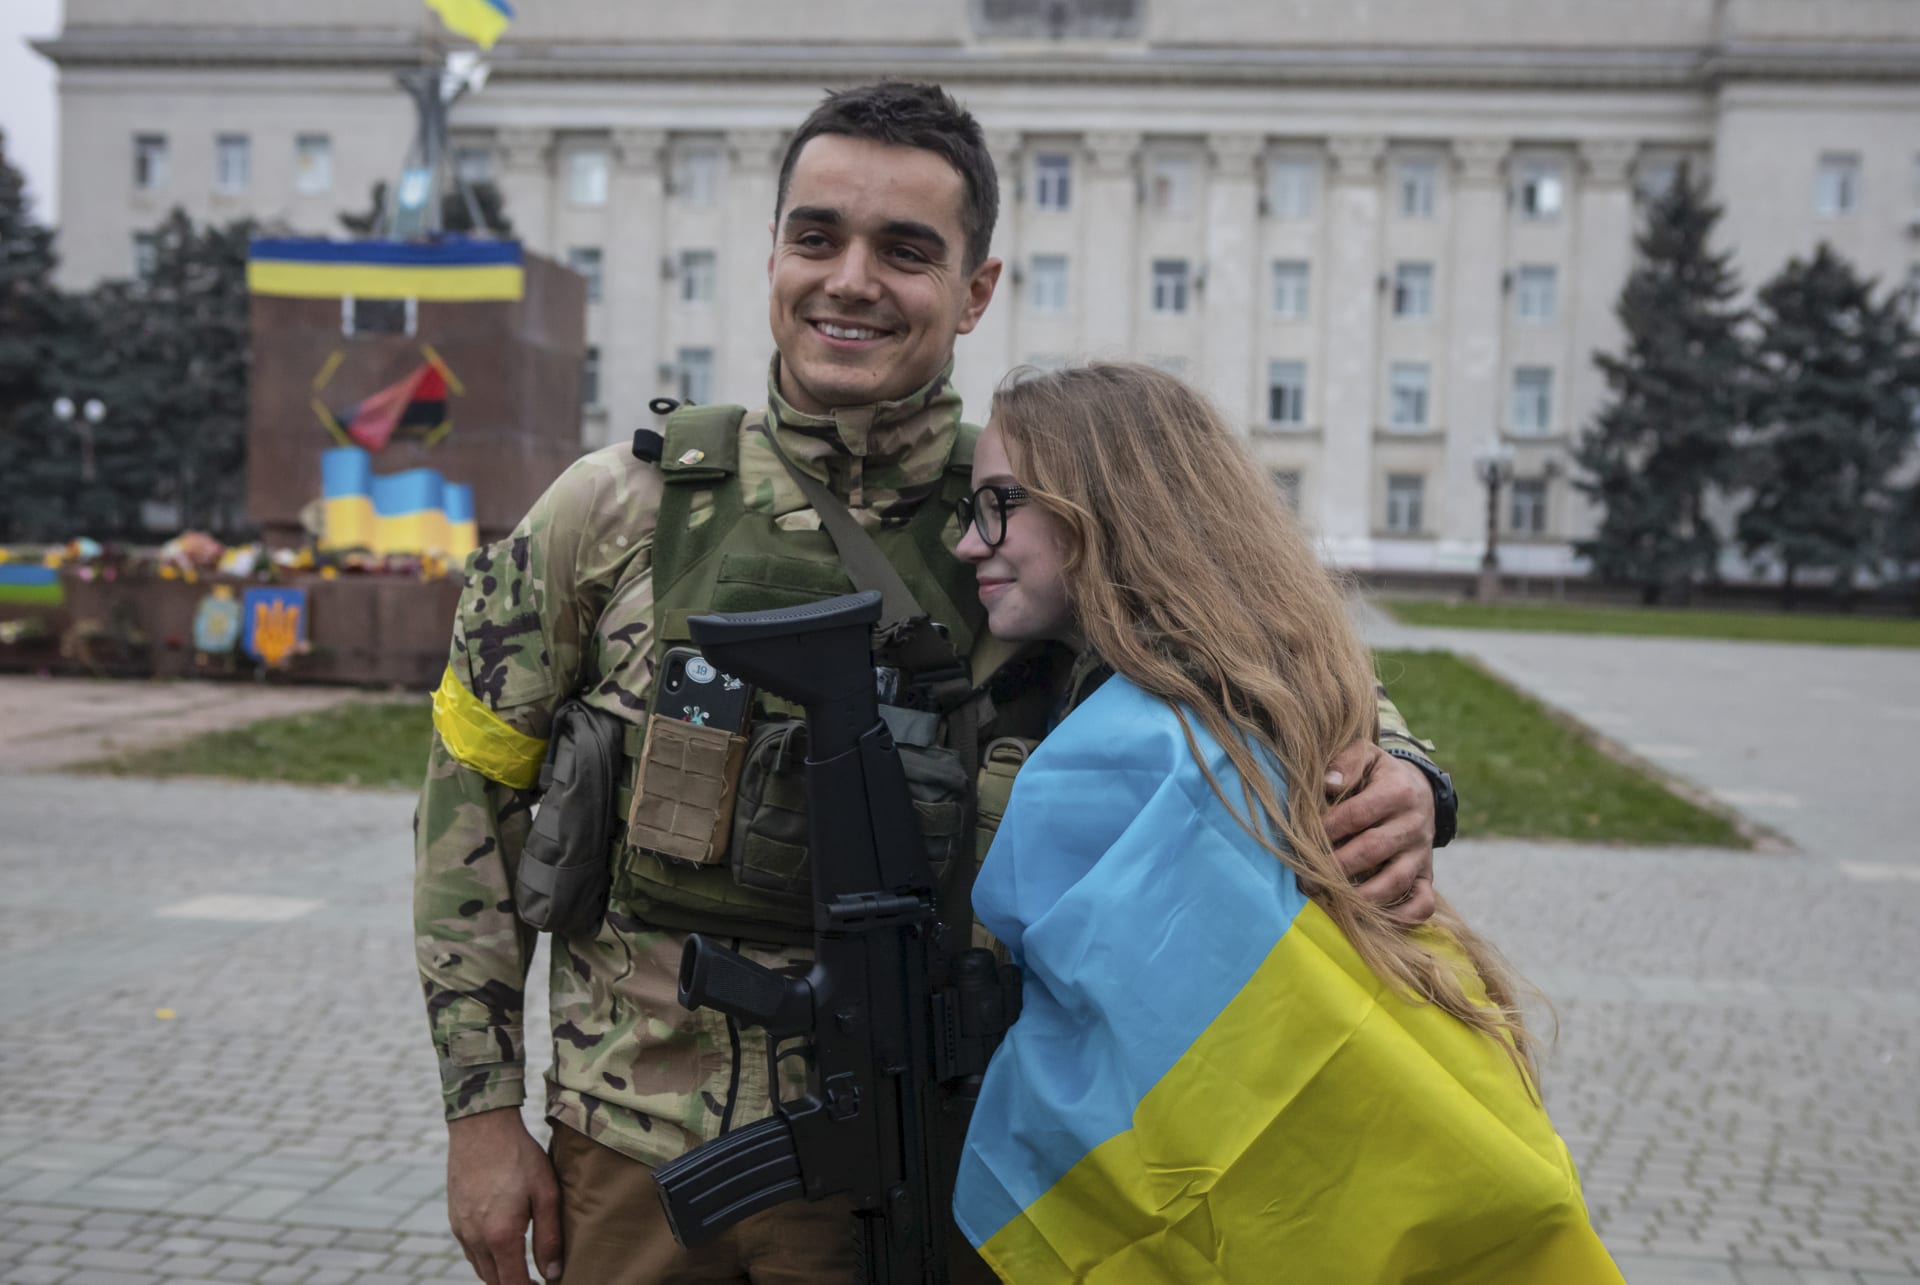 Rusové Cherson nedávno opustili a do města vstoupili ukrajinští vojáci. Ti se dočkali velmi vřelého přivítání od místních obyvatel.